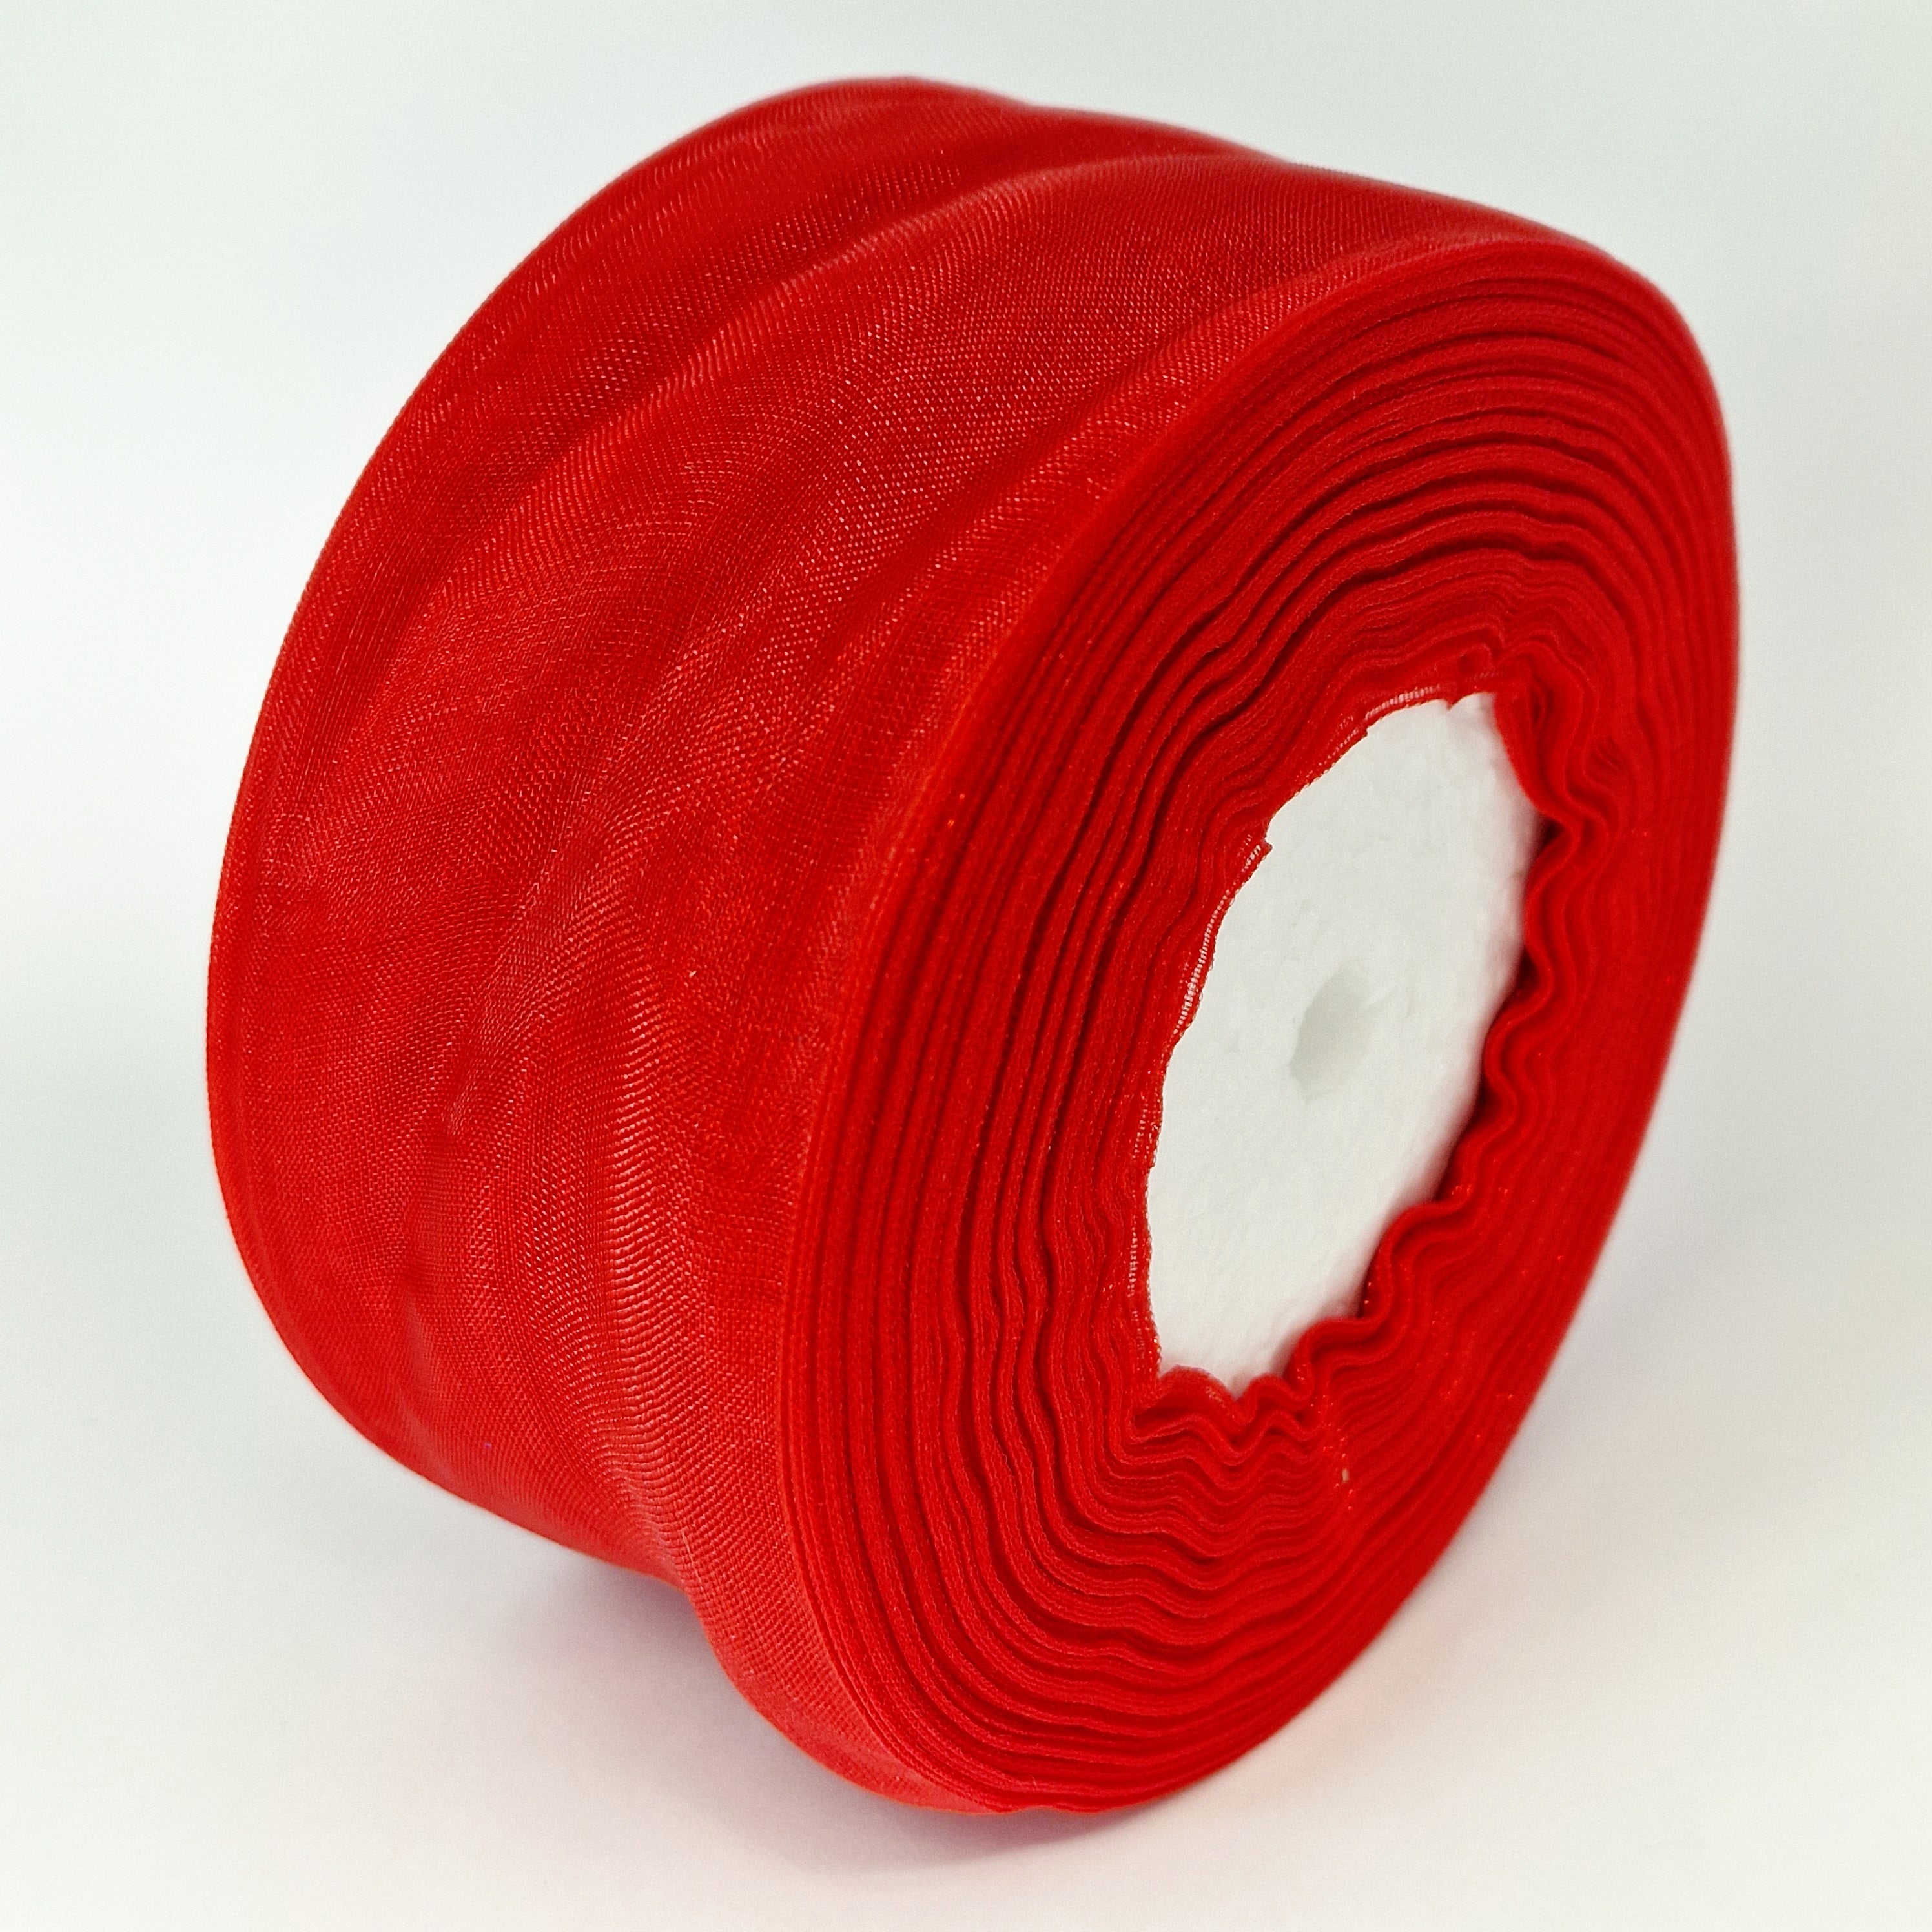 MajorCrafts 50mm 45metres Sheer Organza Fabric Ribbon Roll Red Shade R1026